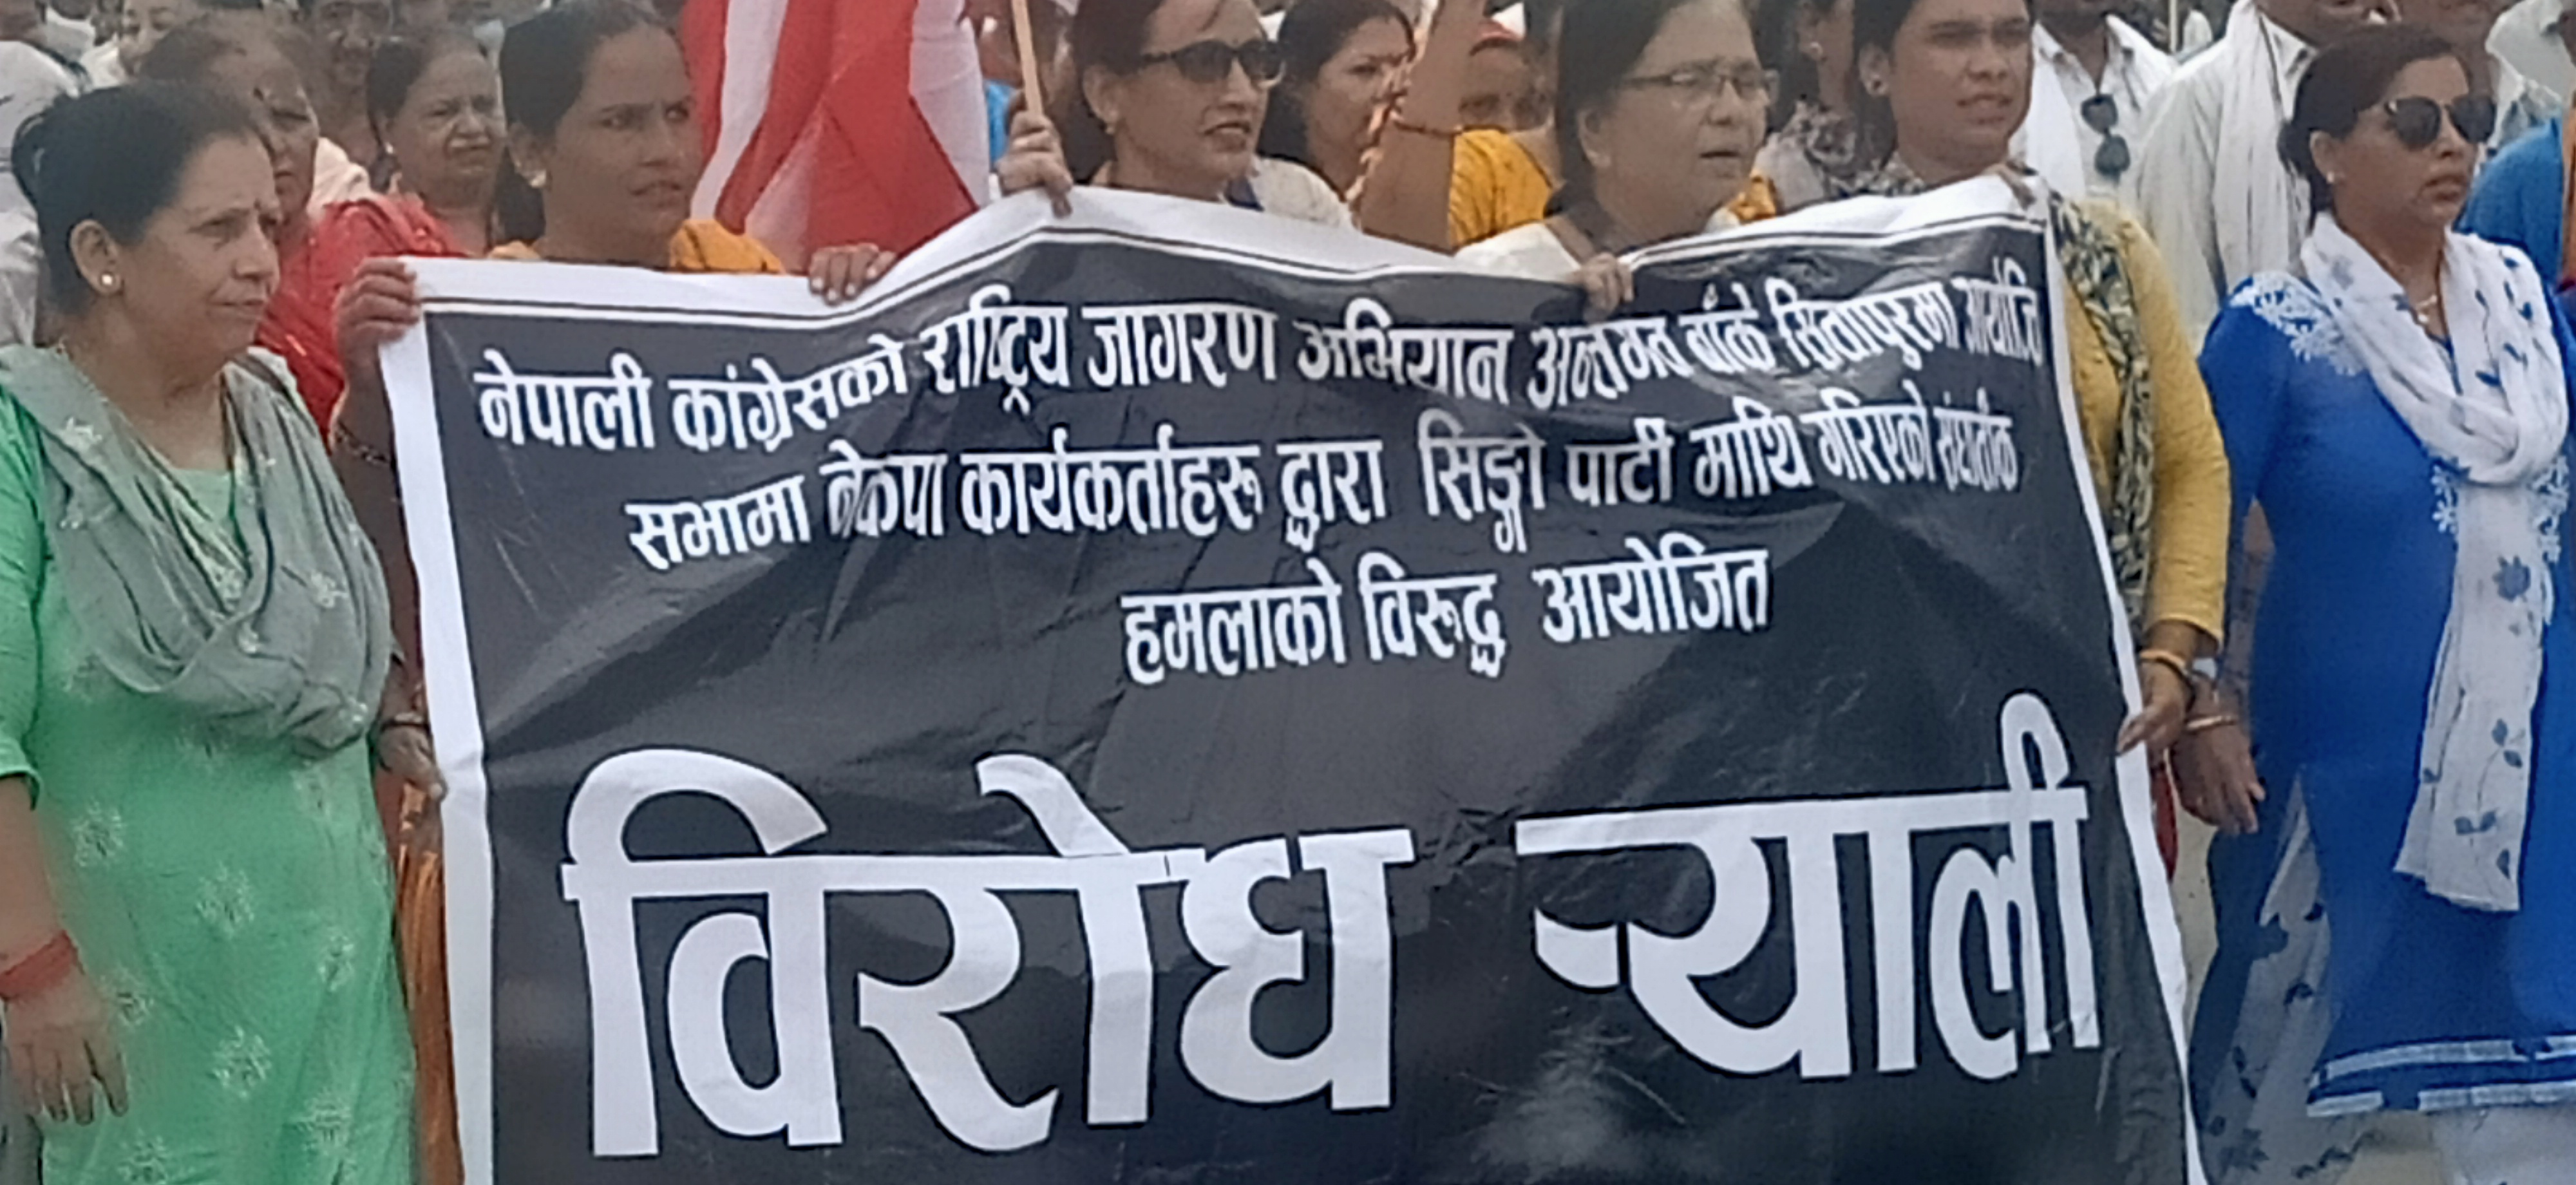 सितापुरको घटनालाई लिएर नेपाली कांग्रेस बांकेको बैठकमा हंगामाः संगठन बिभाग प्रमुखको राजीनामा, घटनाको वास्तबिक रिपोर्टको भिडियो सहित